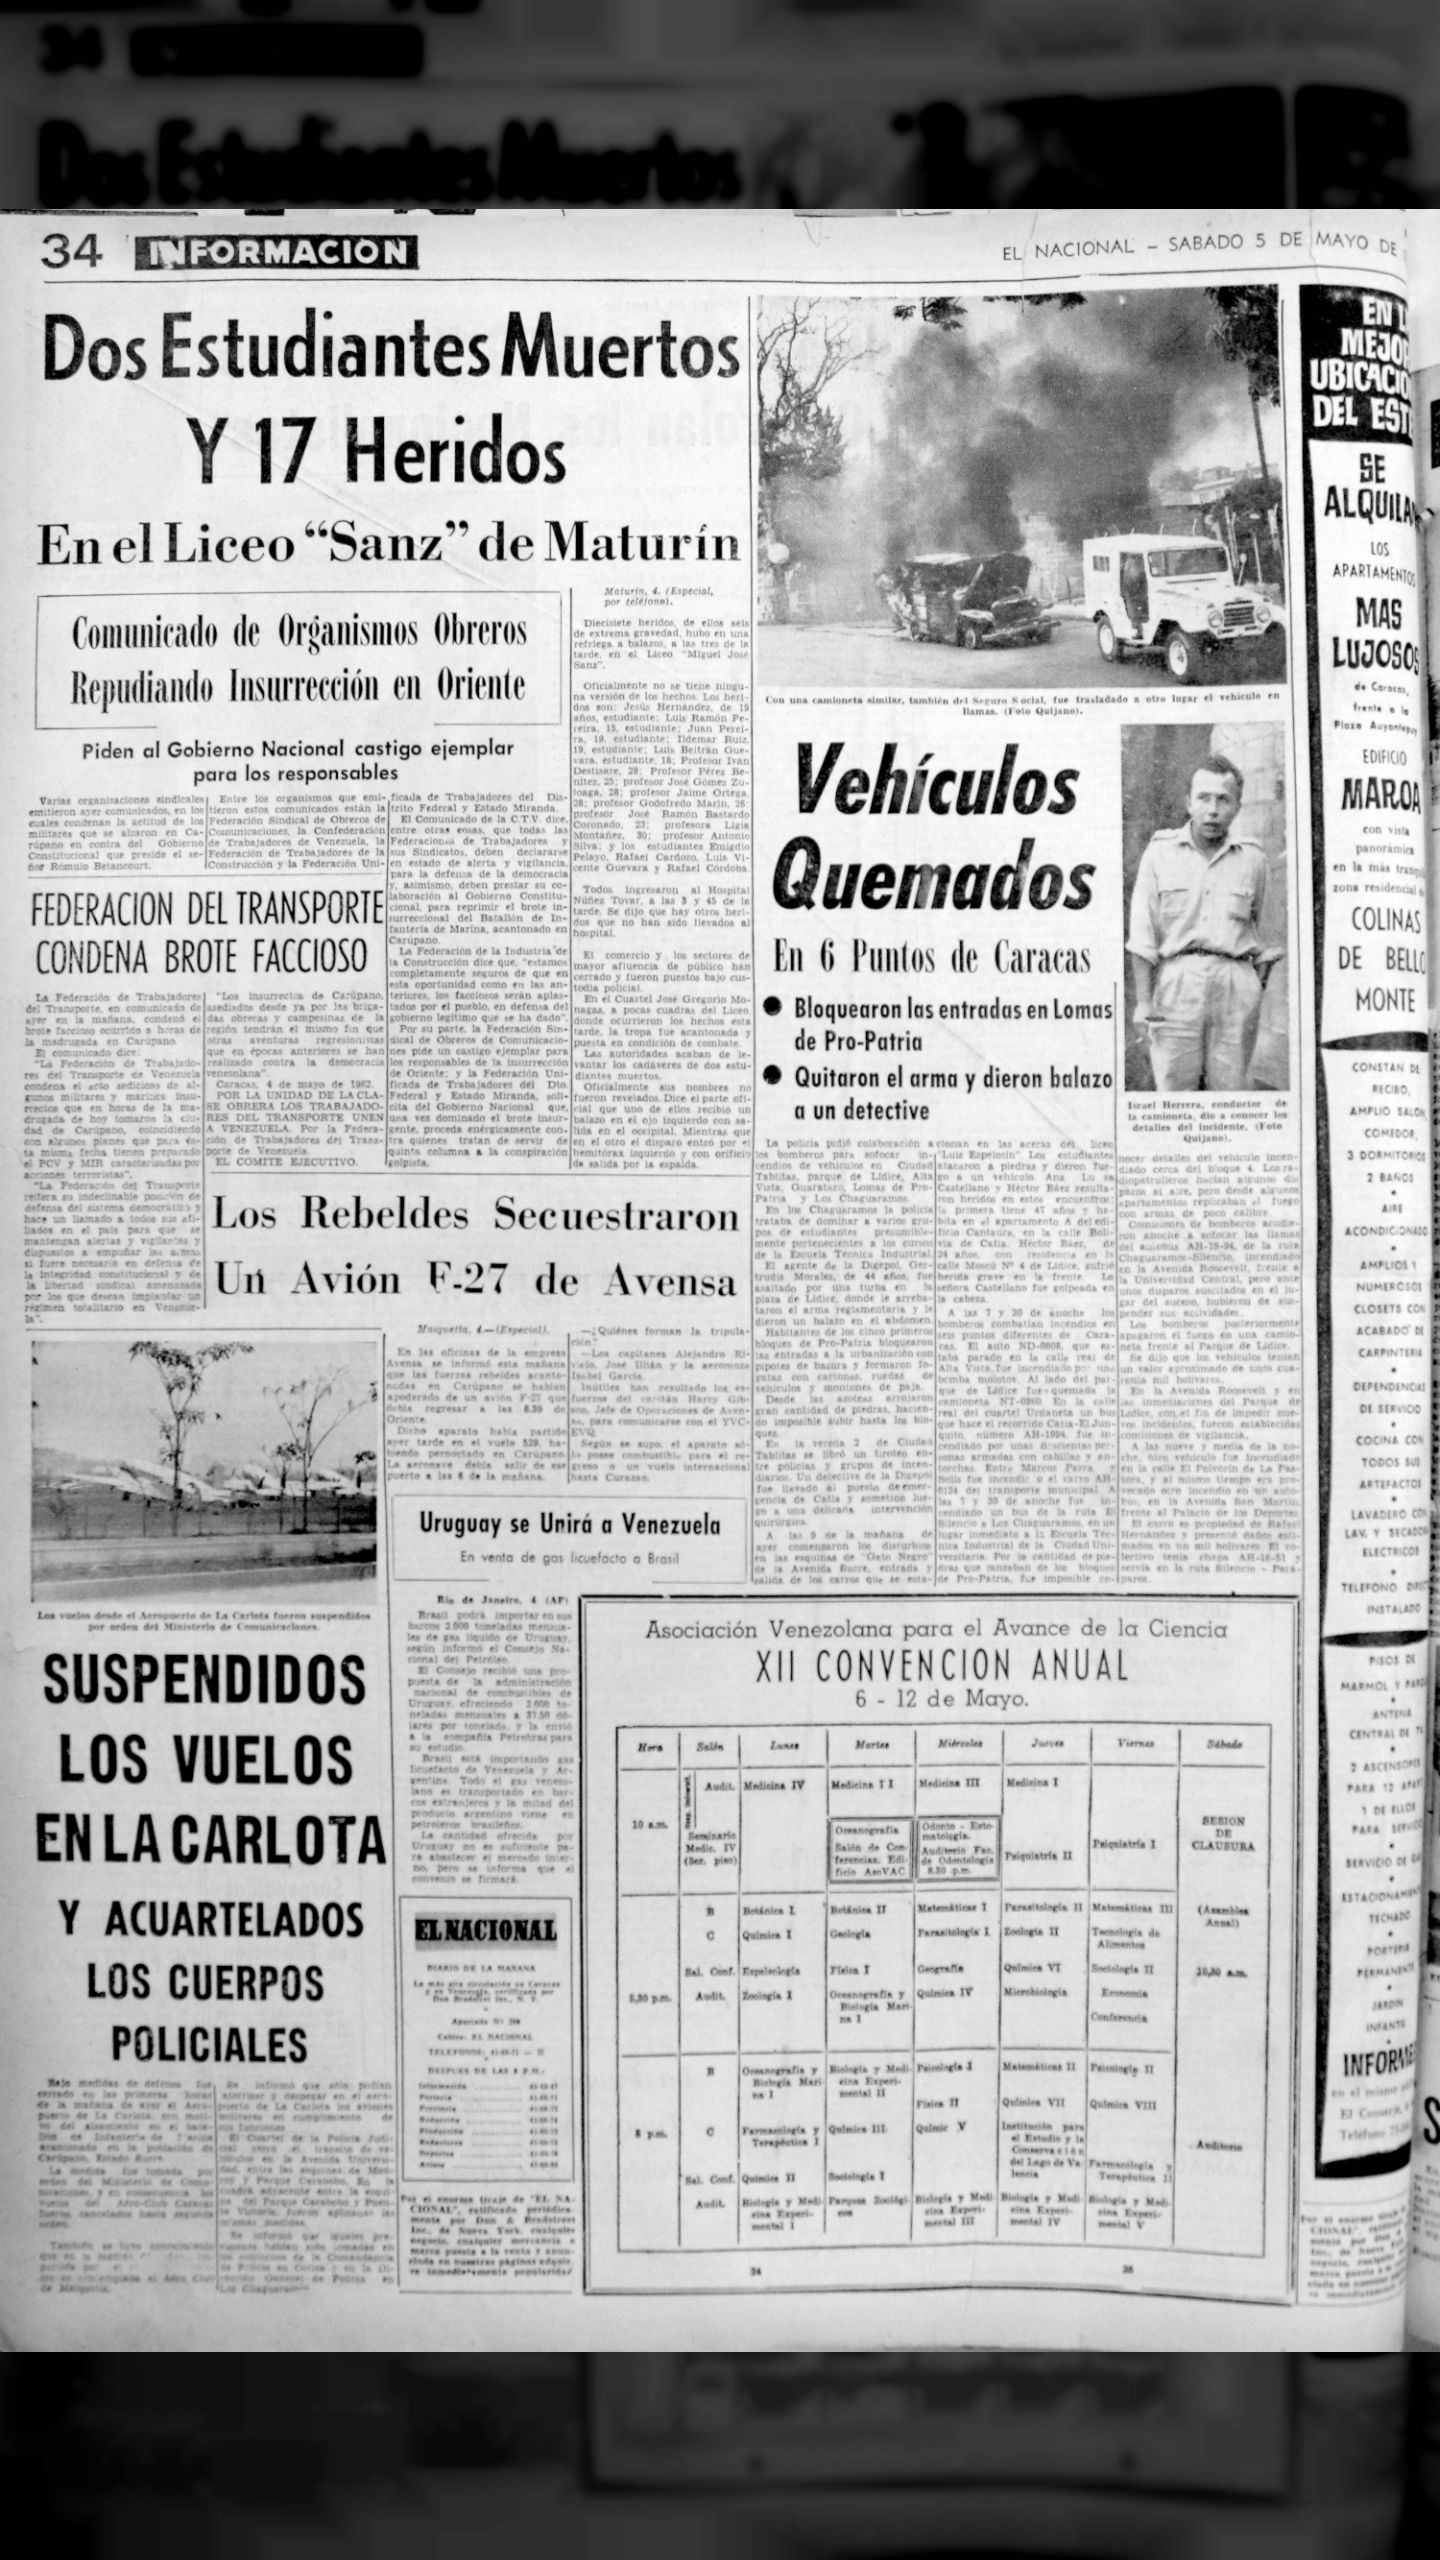 Dos estudiantes muertos y 17 heridos en el Liceo Sanz de Maturín (El Nacional, 5 de mayo de 1962)